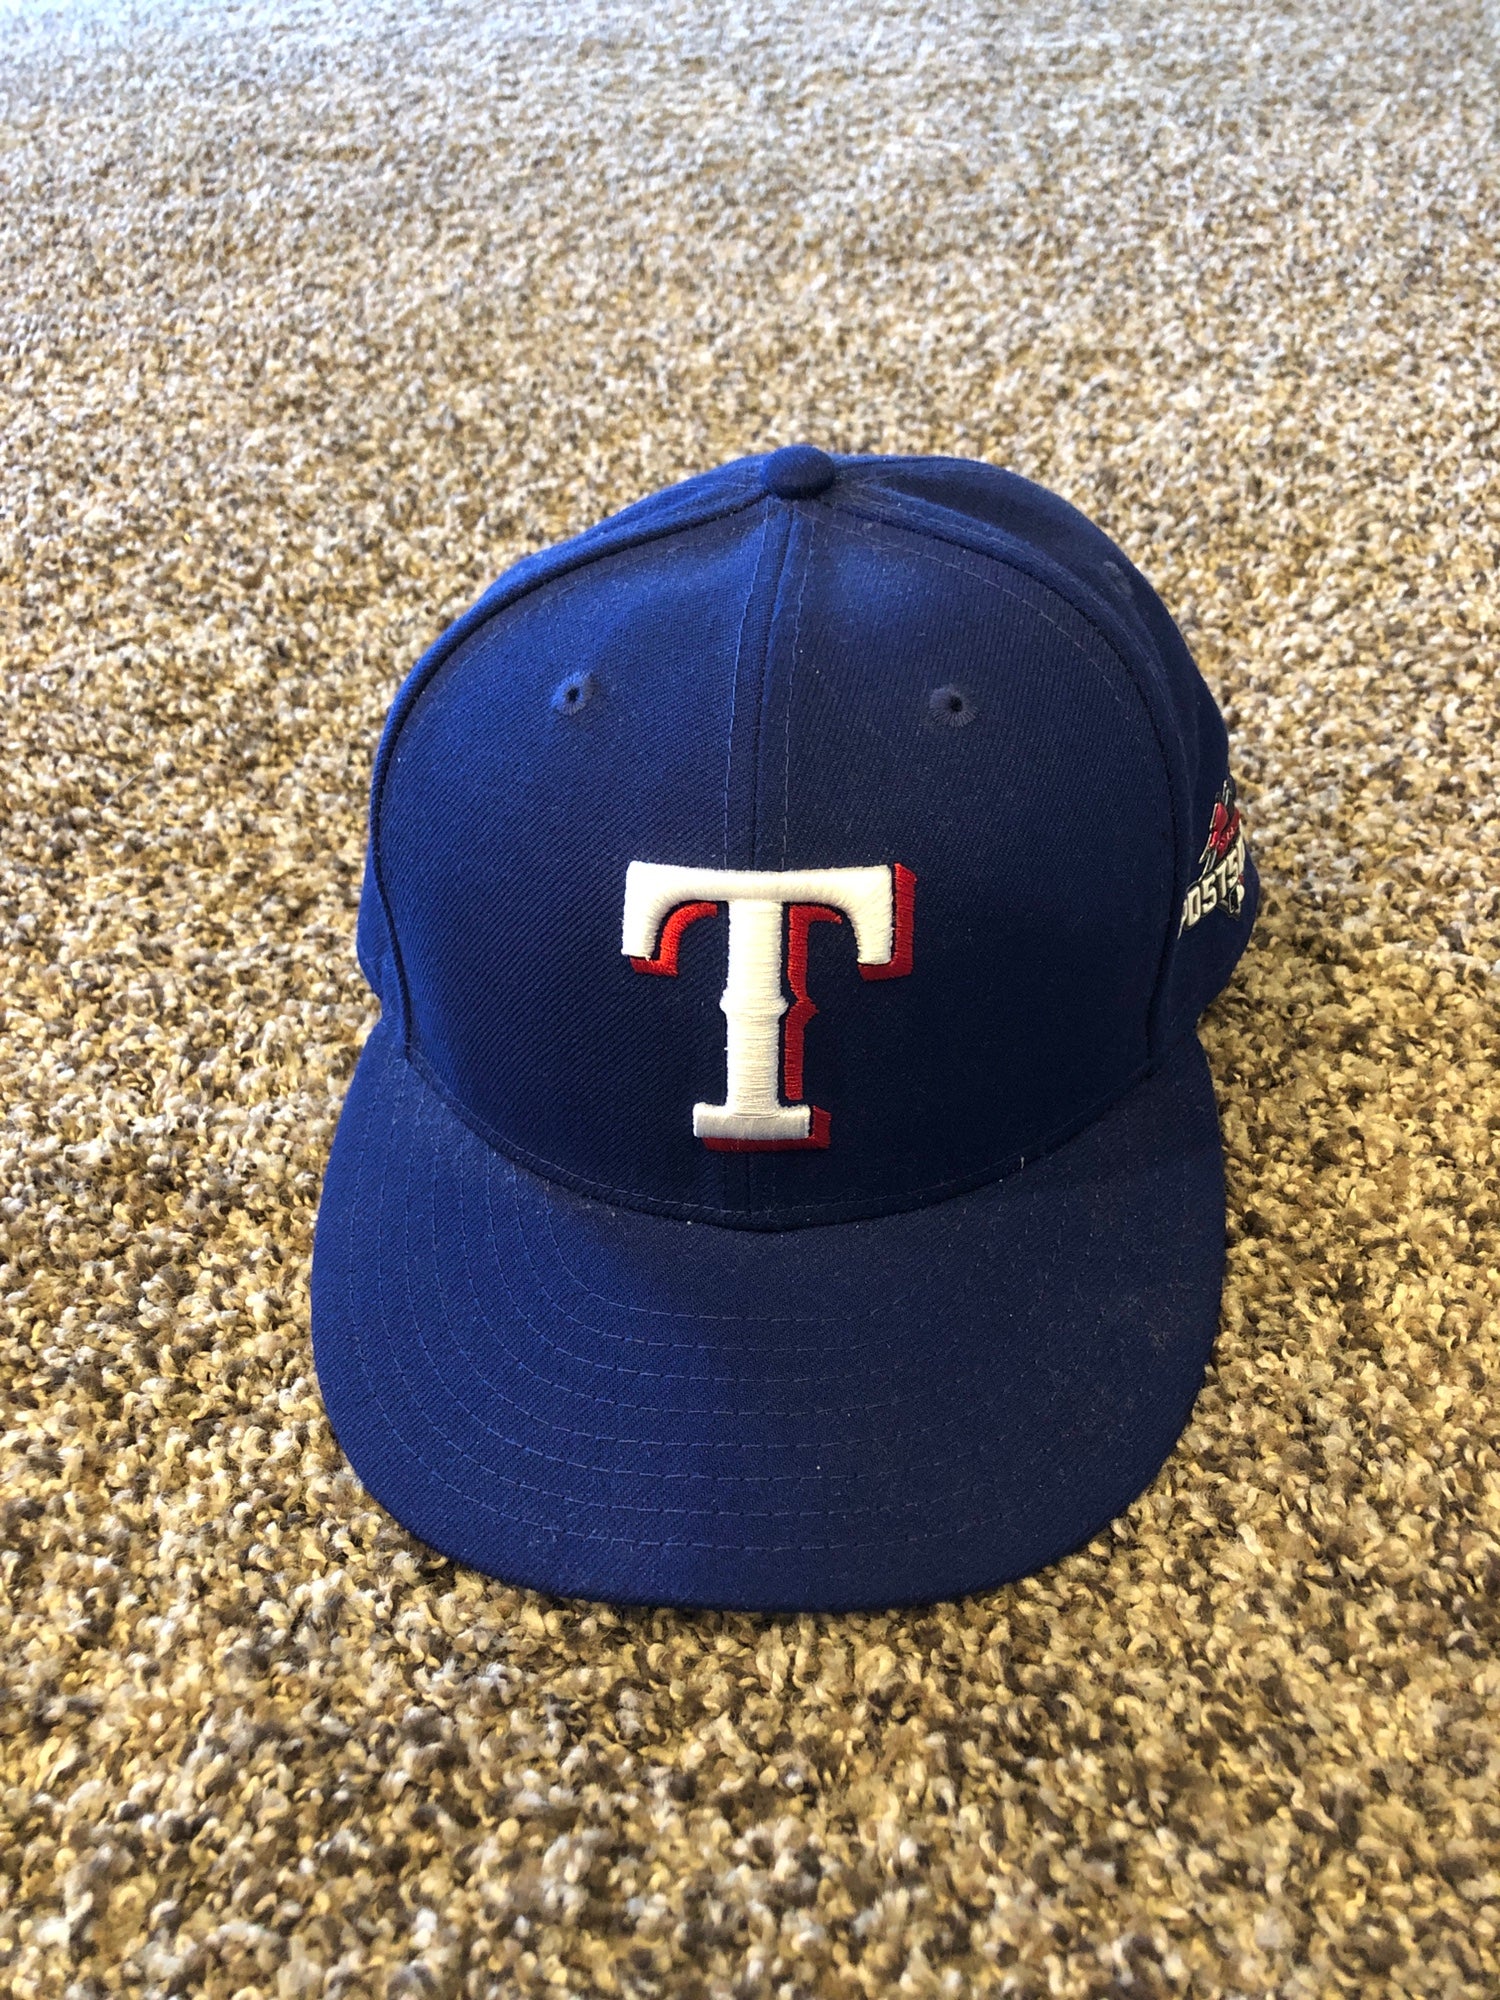 Ladies Texas Rangers Adjustable Hats, Rangers Adjustable Caps, Hat